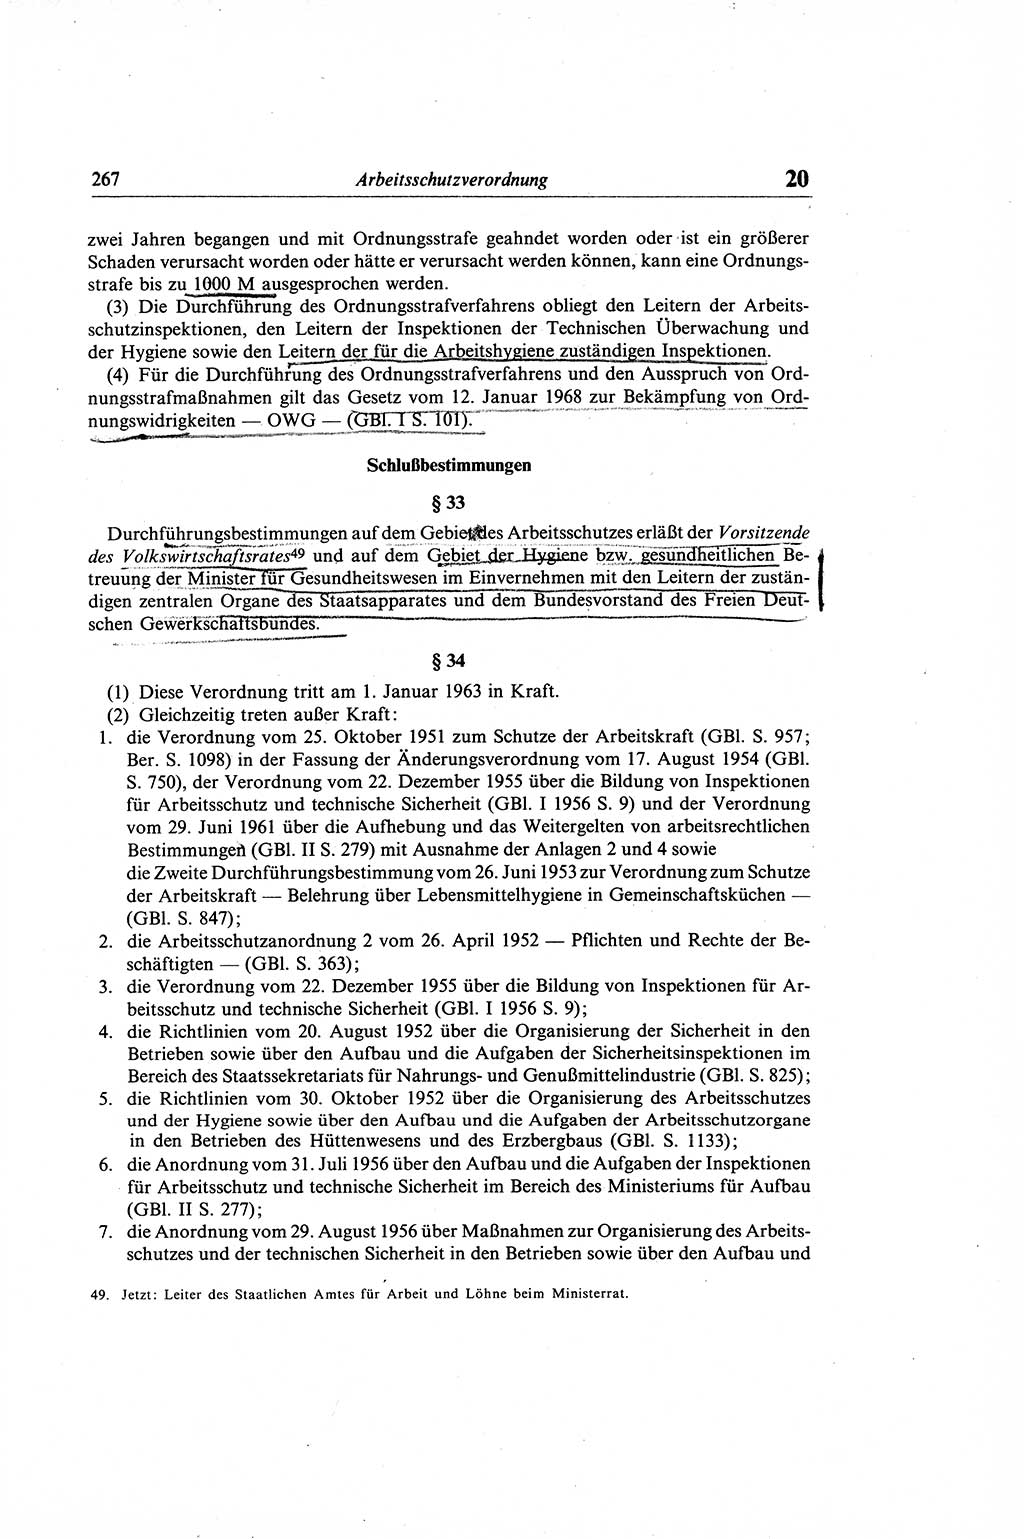 Gesetzbuch der Arbeit (GBA) und andere ausgewählte rechtliche Bestimmungen [Deutsche Demokratische Republik (DDR)] 1968, Seite 267 (GBA DDR 1968, S. 267)